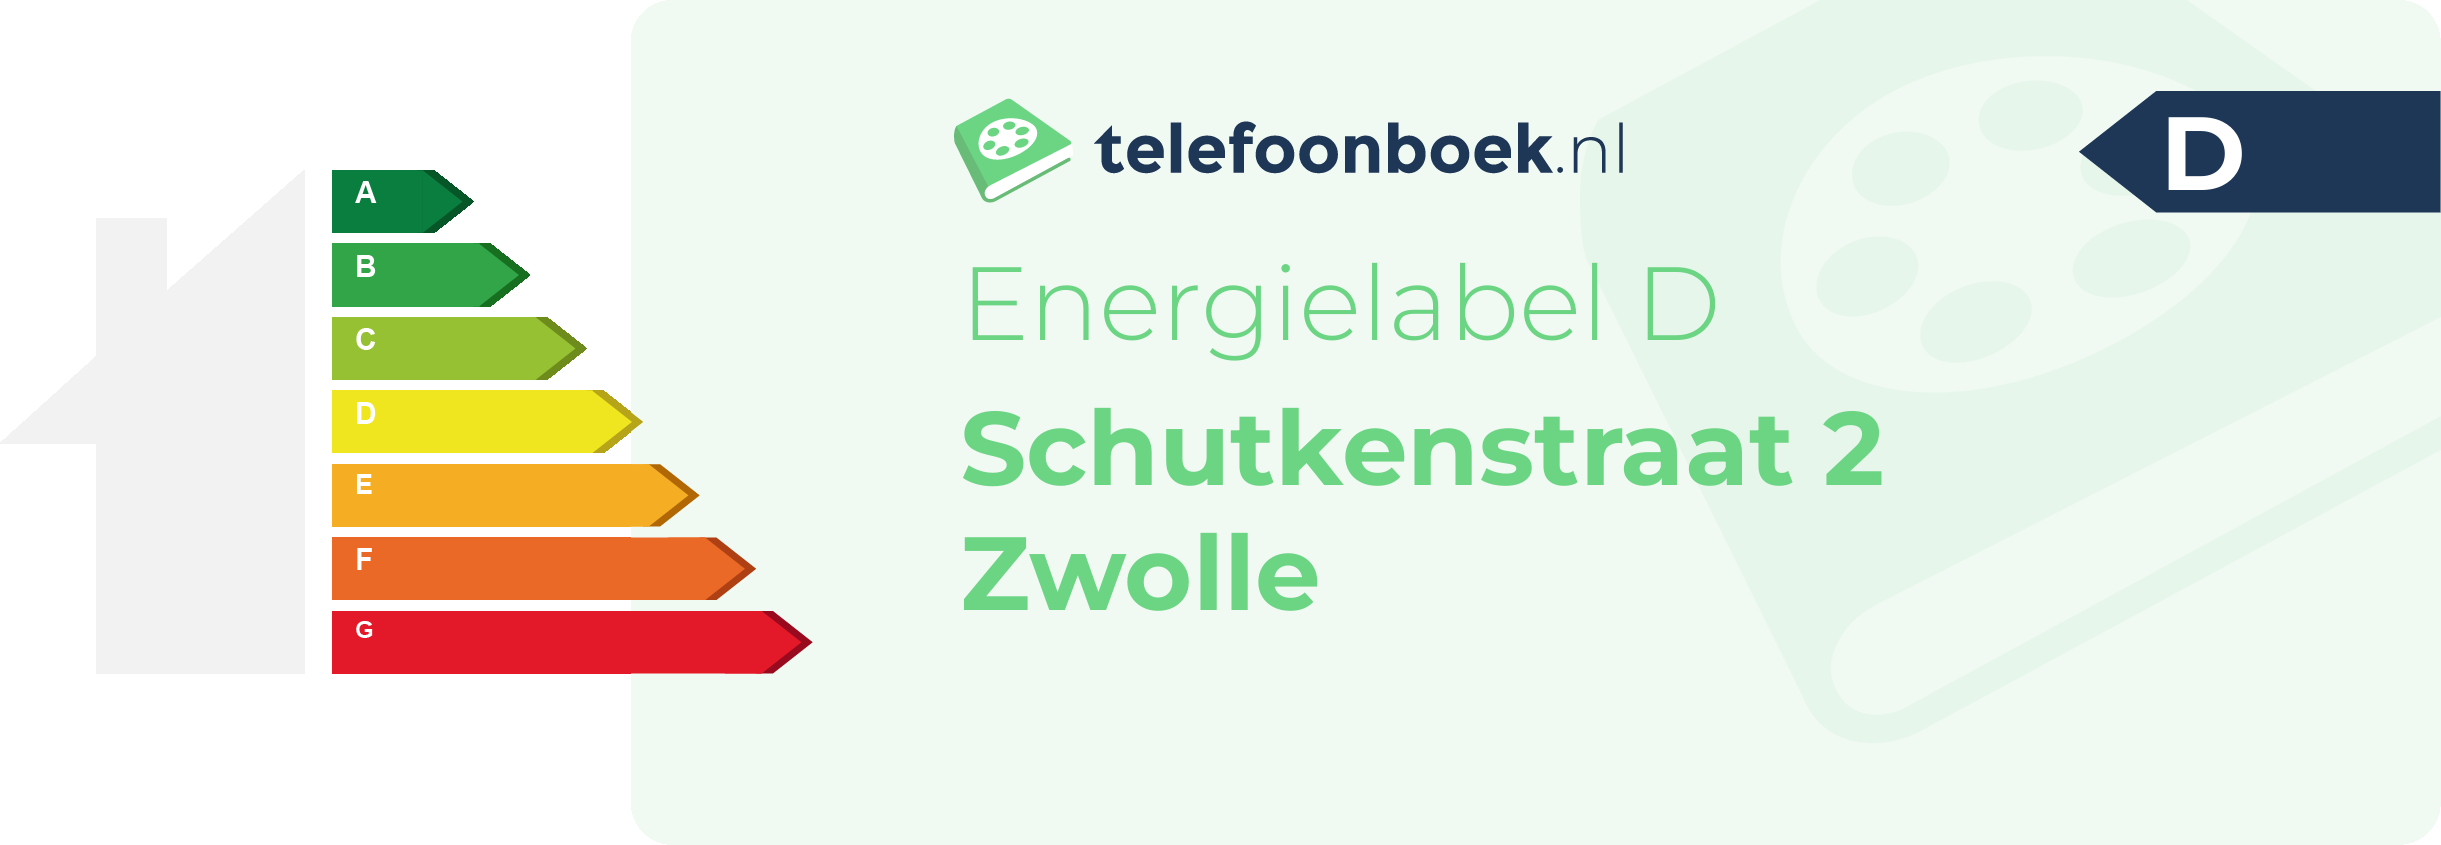 Energielabel Schutkenstraat 2 Zwolle